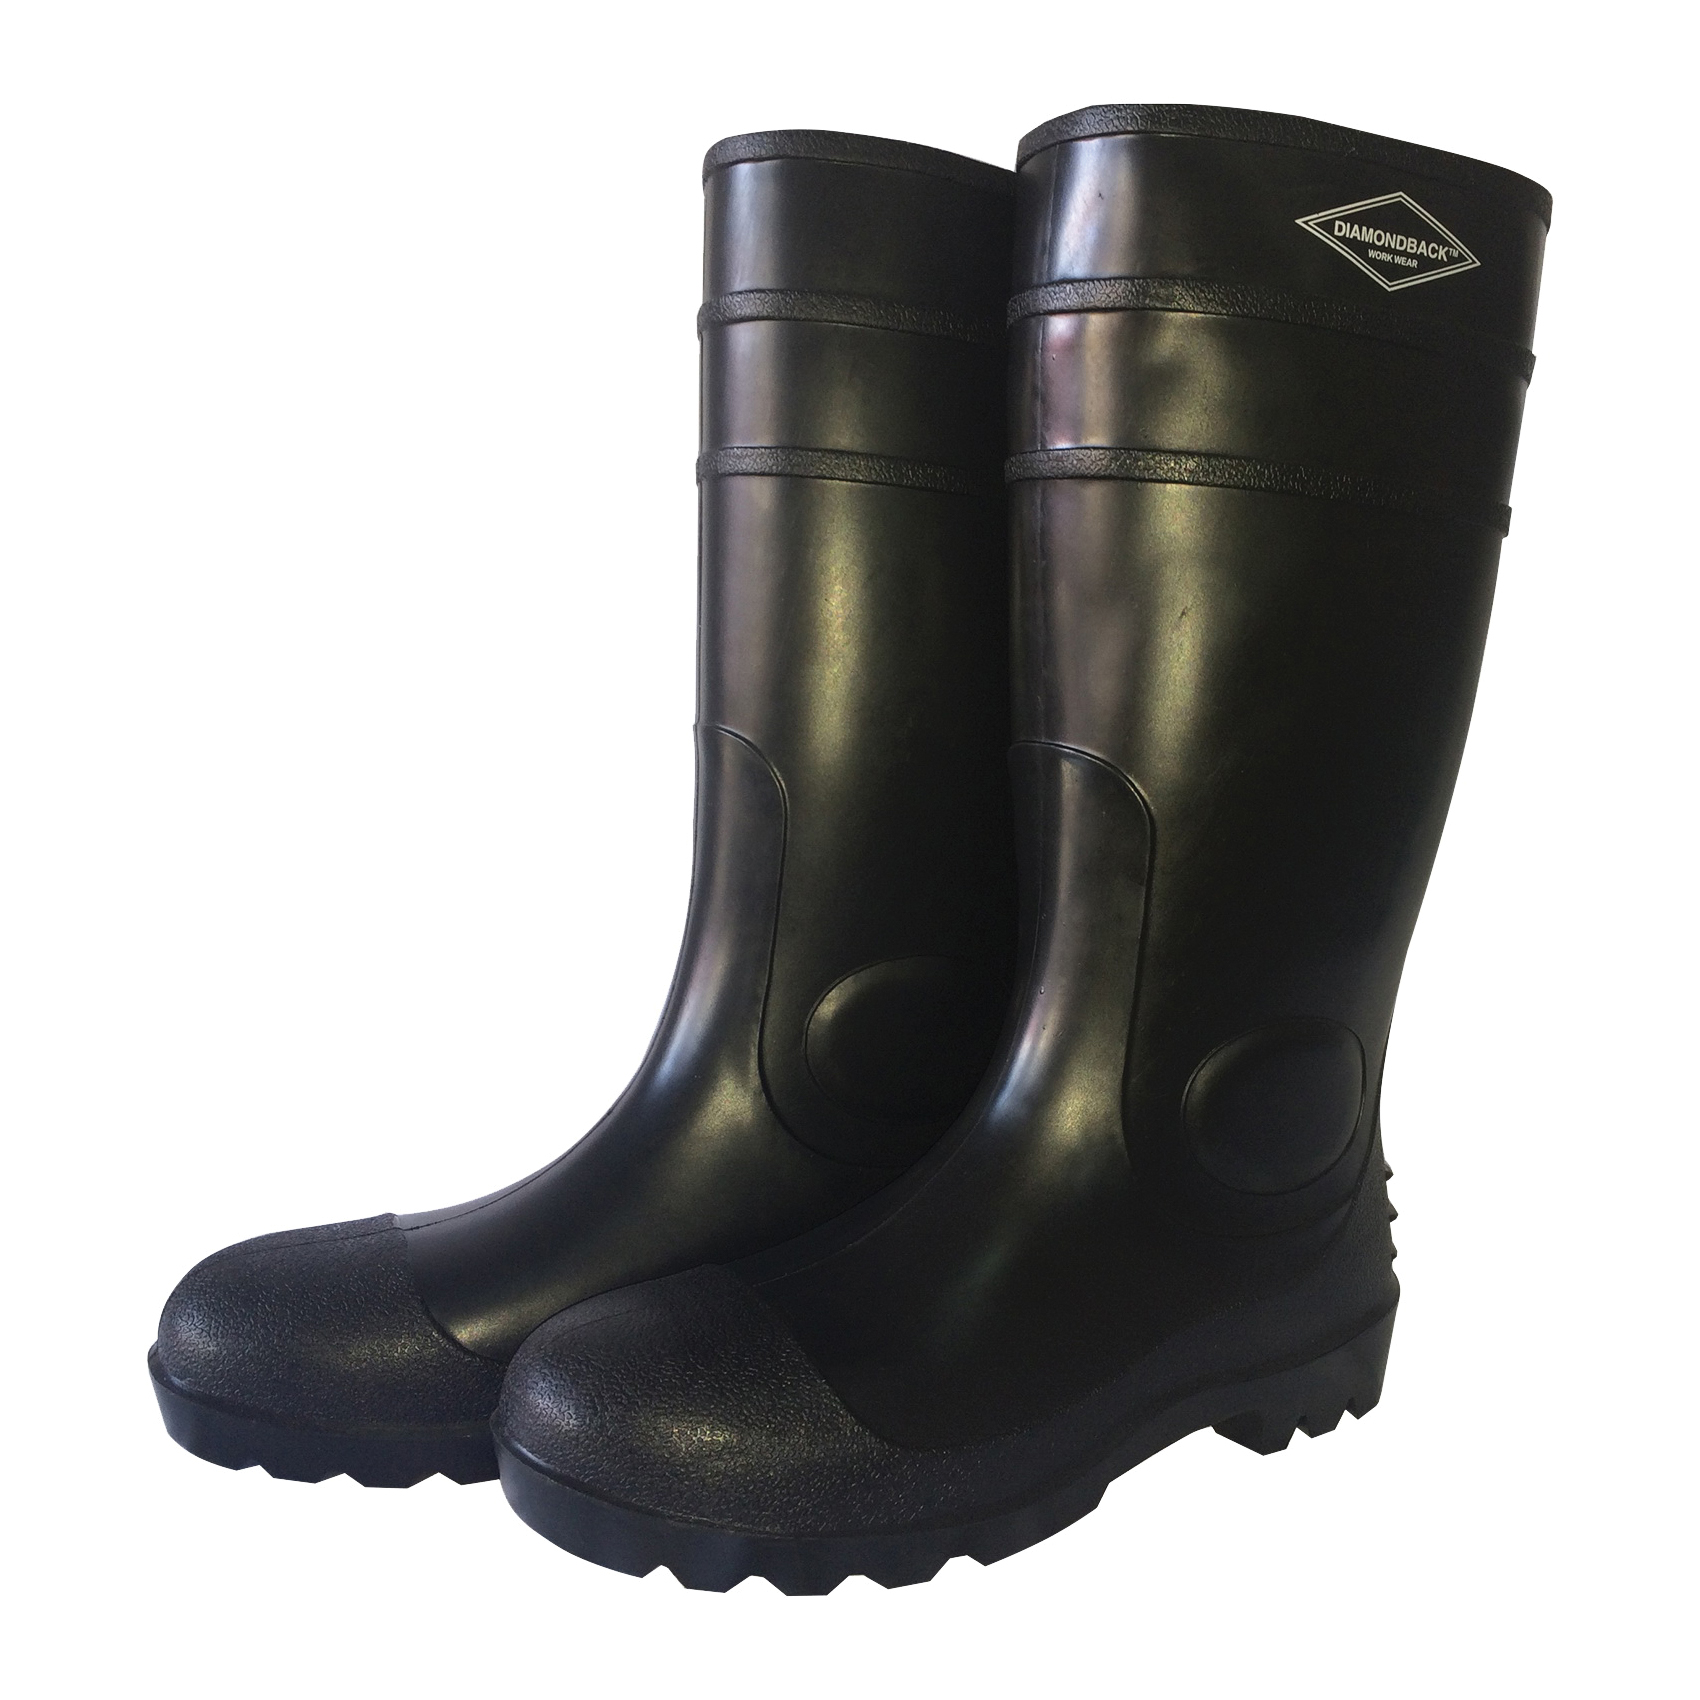 L-G06B8 Knee Boots, 8, Black, PVC Upper